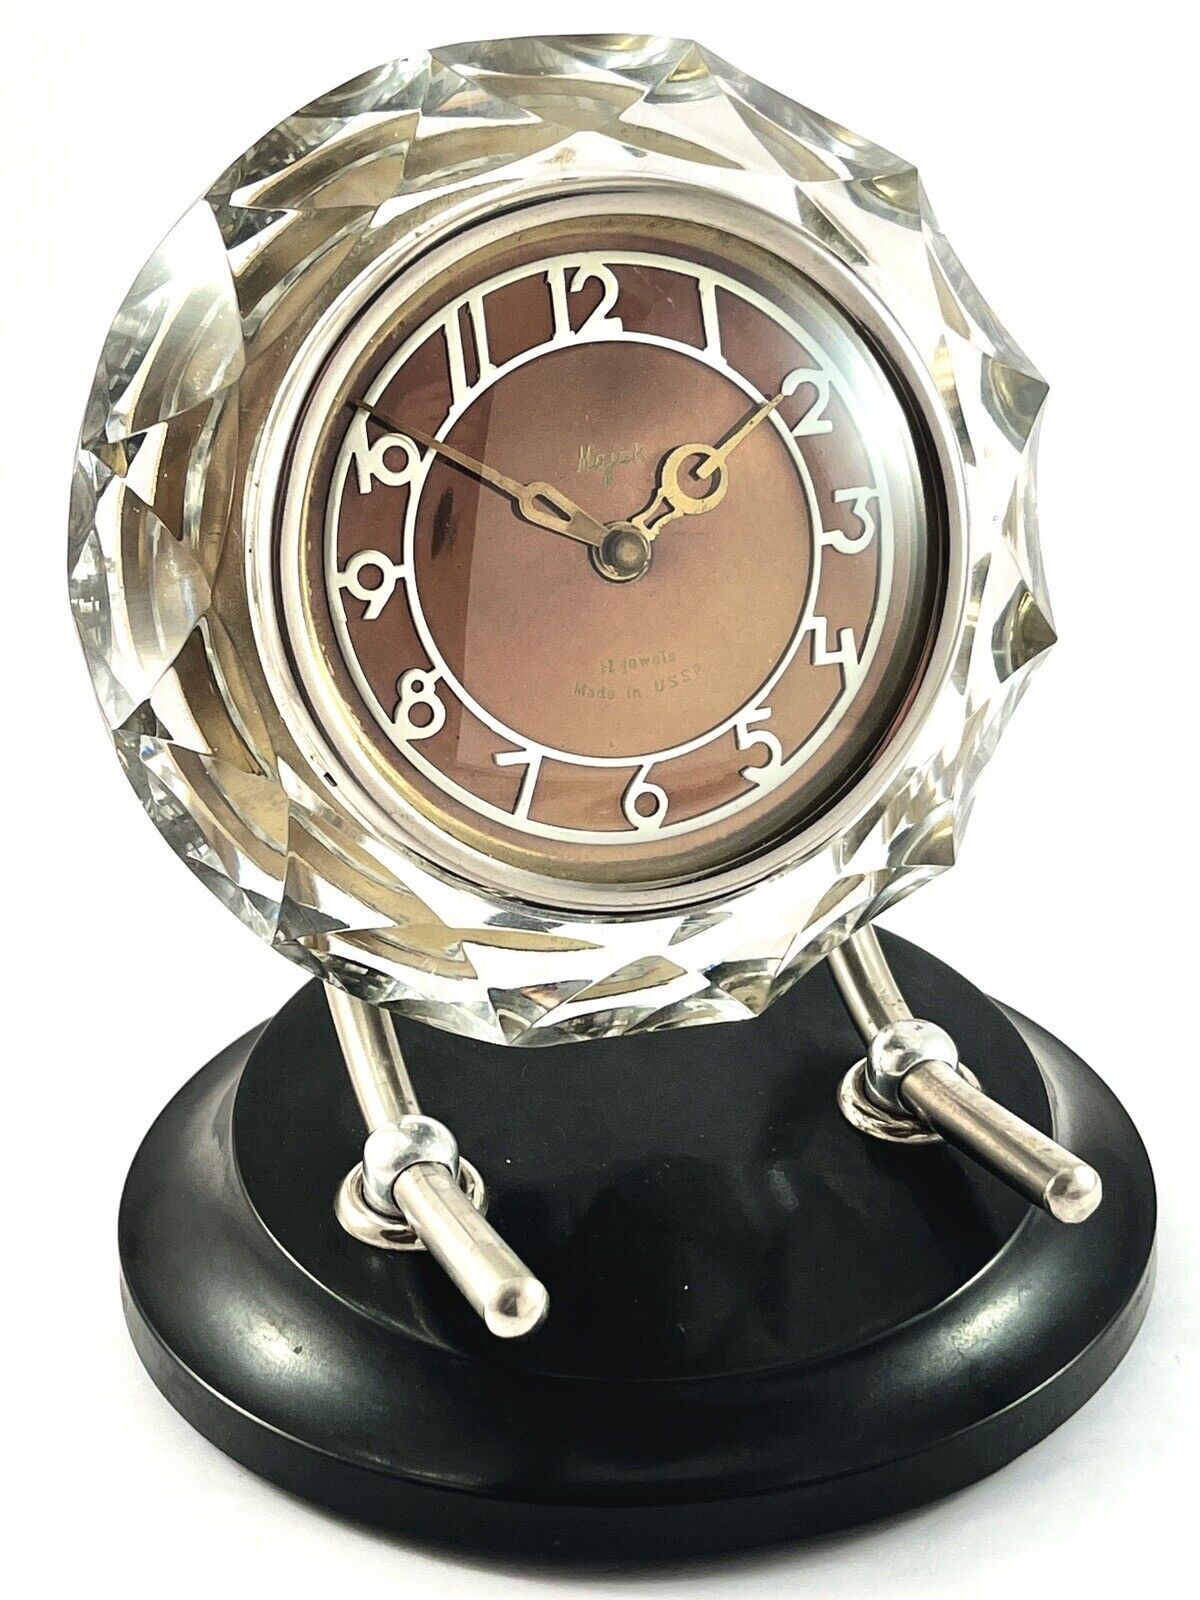 VTG 1965 MAJAK MAYAK Crystal Mantel Soviet Vintage Desktop Clock USSR 11 jewels